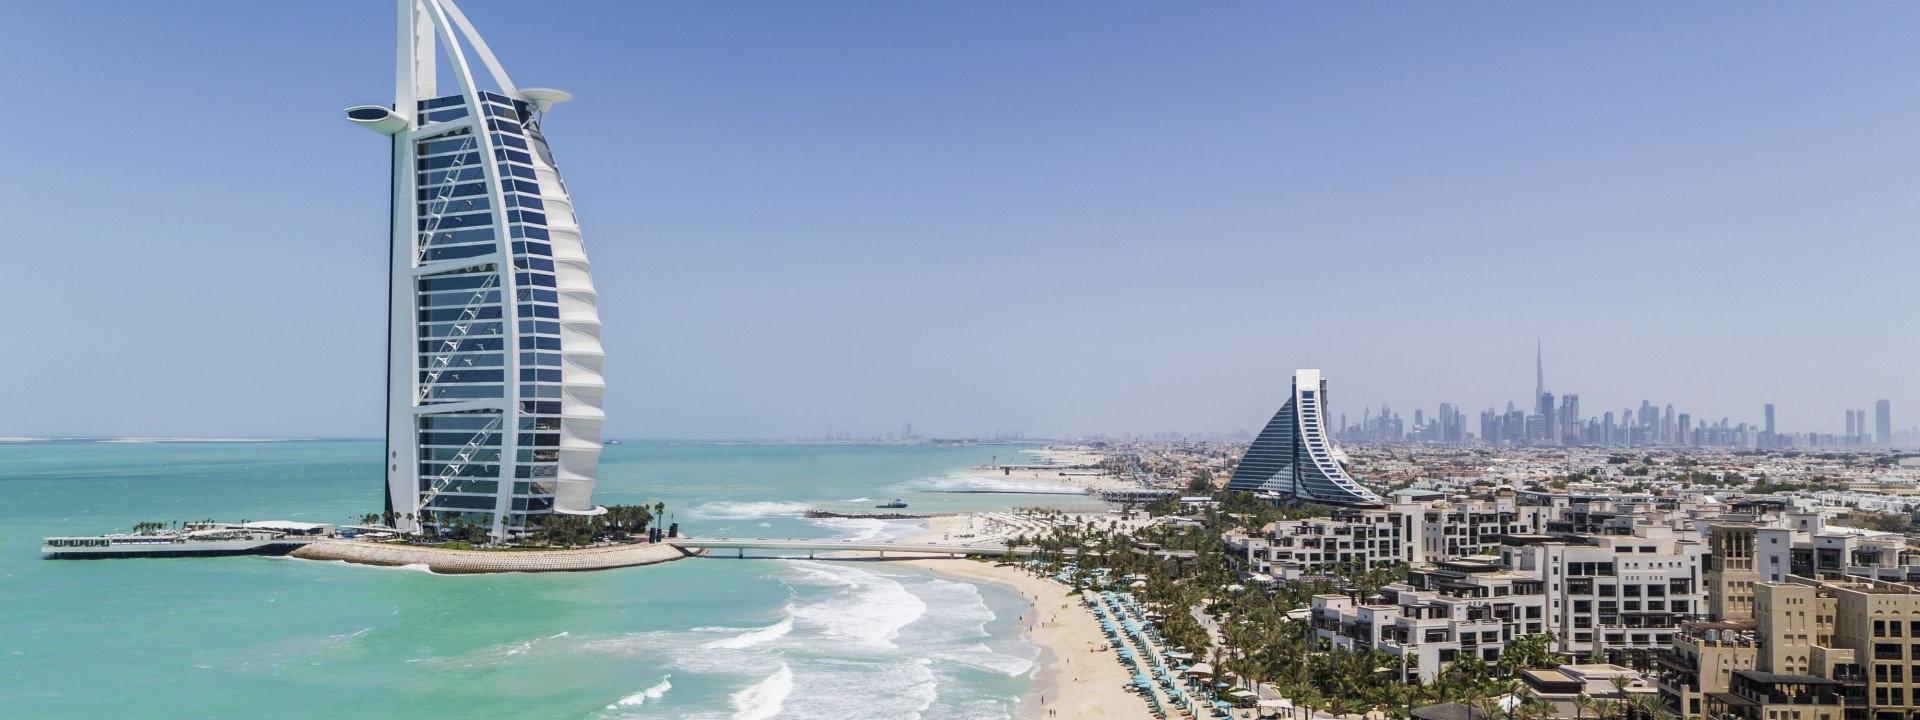 Burj Al Arab Jumeirah - Jumeirah Beach Hotel  - Jumeirah Al Naseem - Private Beach - Drone-retouched